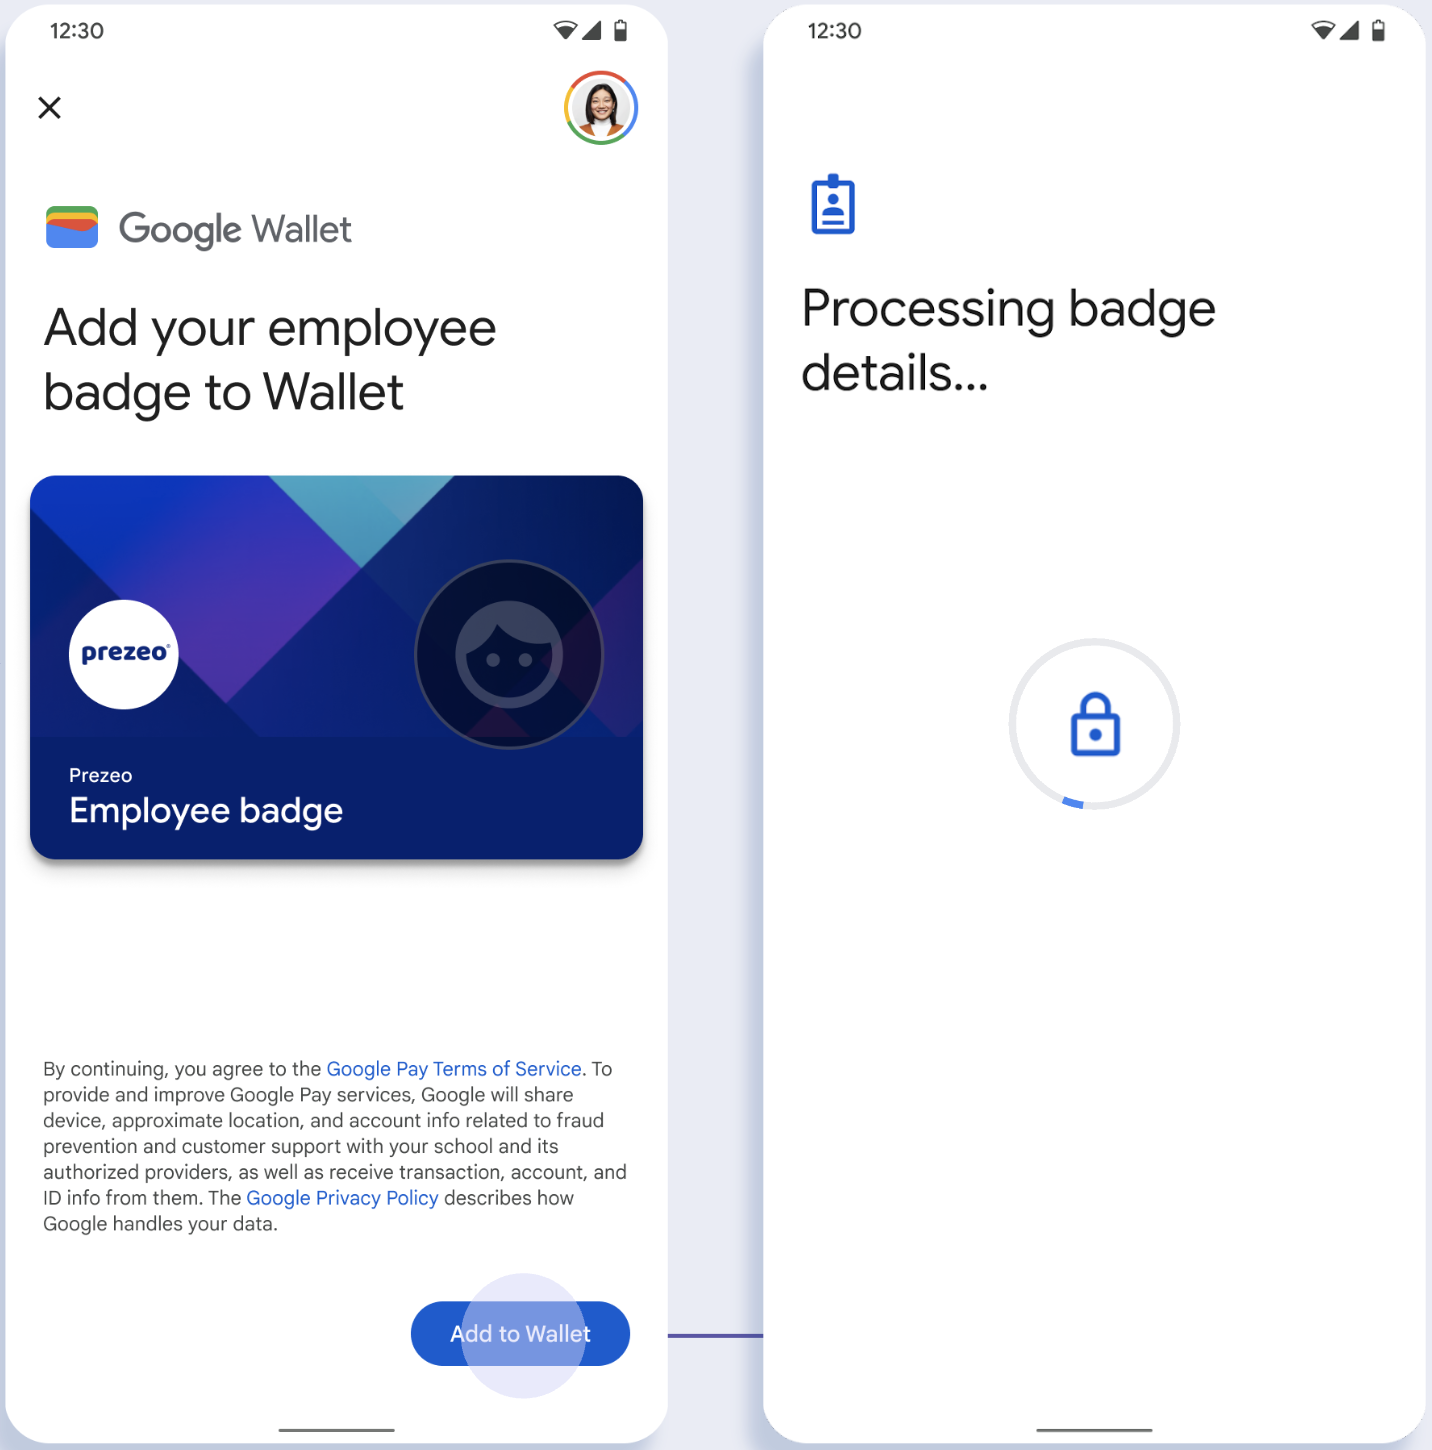 ในหน้าจอแรก แอปจะเชื่อมต่อกับ Google Wallet ในหน้าจอที่ 2 ผู้ใช้ยอมรับข้อกำหนดในการให้บริการและดำเนินการต่อ